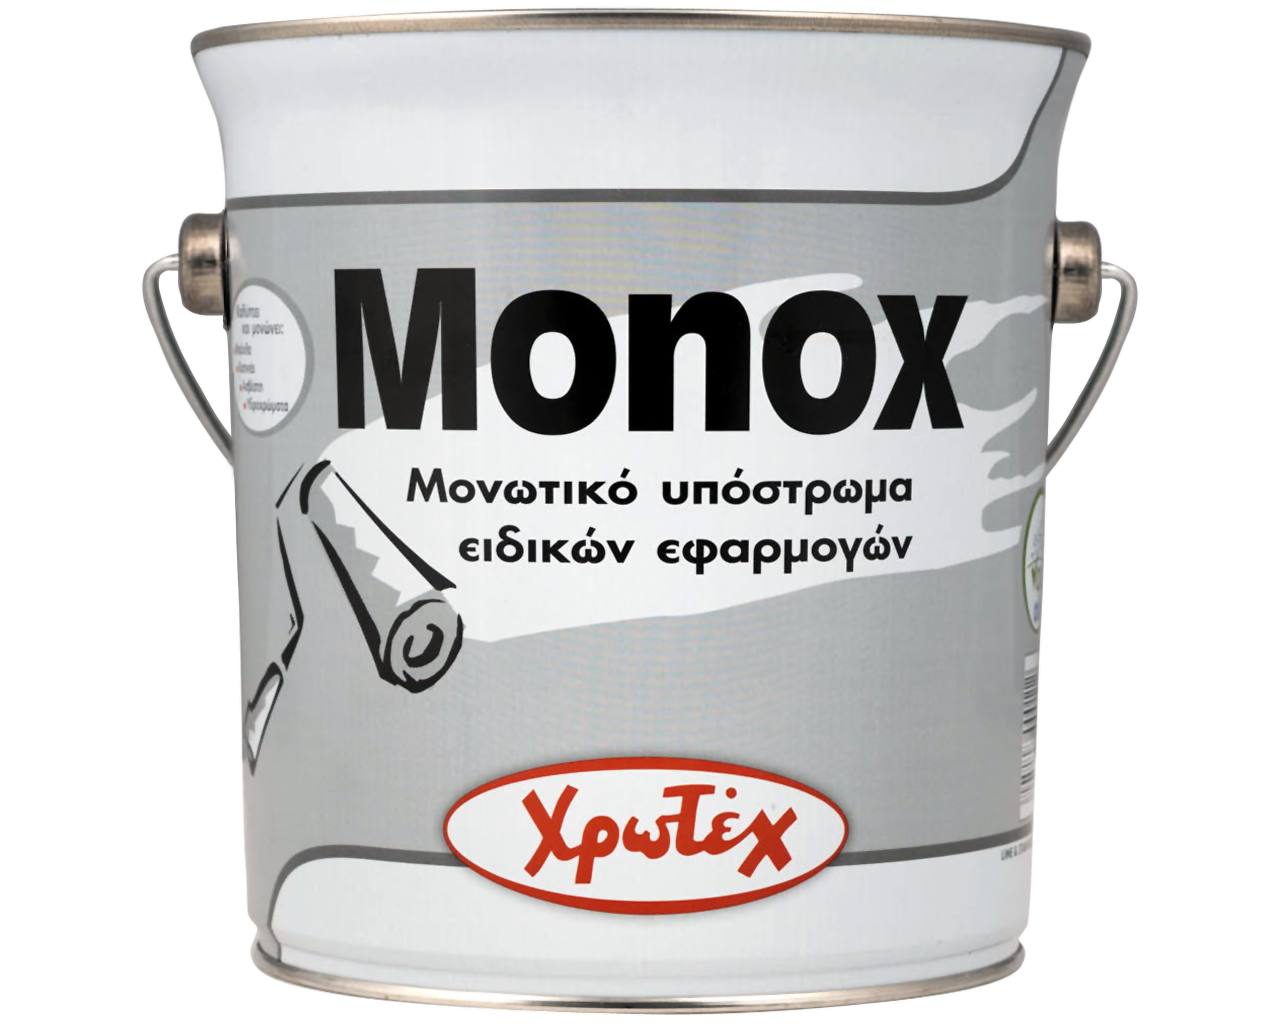 Χρωτέχ Monox Μονωτικό Υπόστρωμα Διαλύτου Λερωμένων(Καπνιά) ή Υδροχρωματισμένων(Ασβέστη, Κόλλα) Επιφανειών Λευκό ΜΑΤ